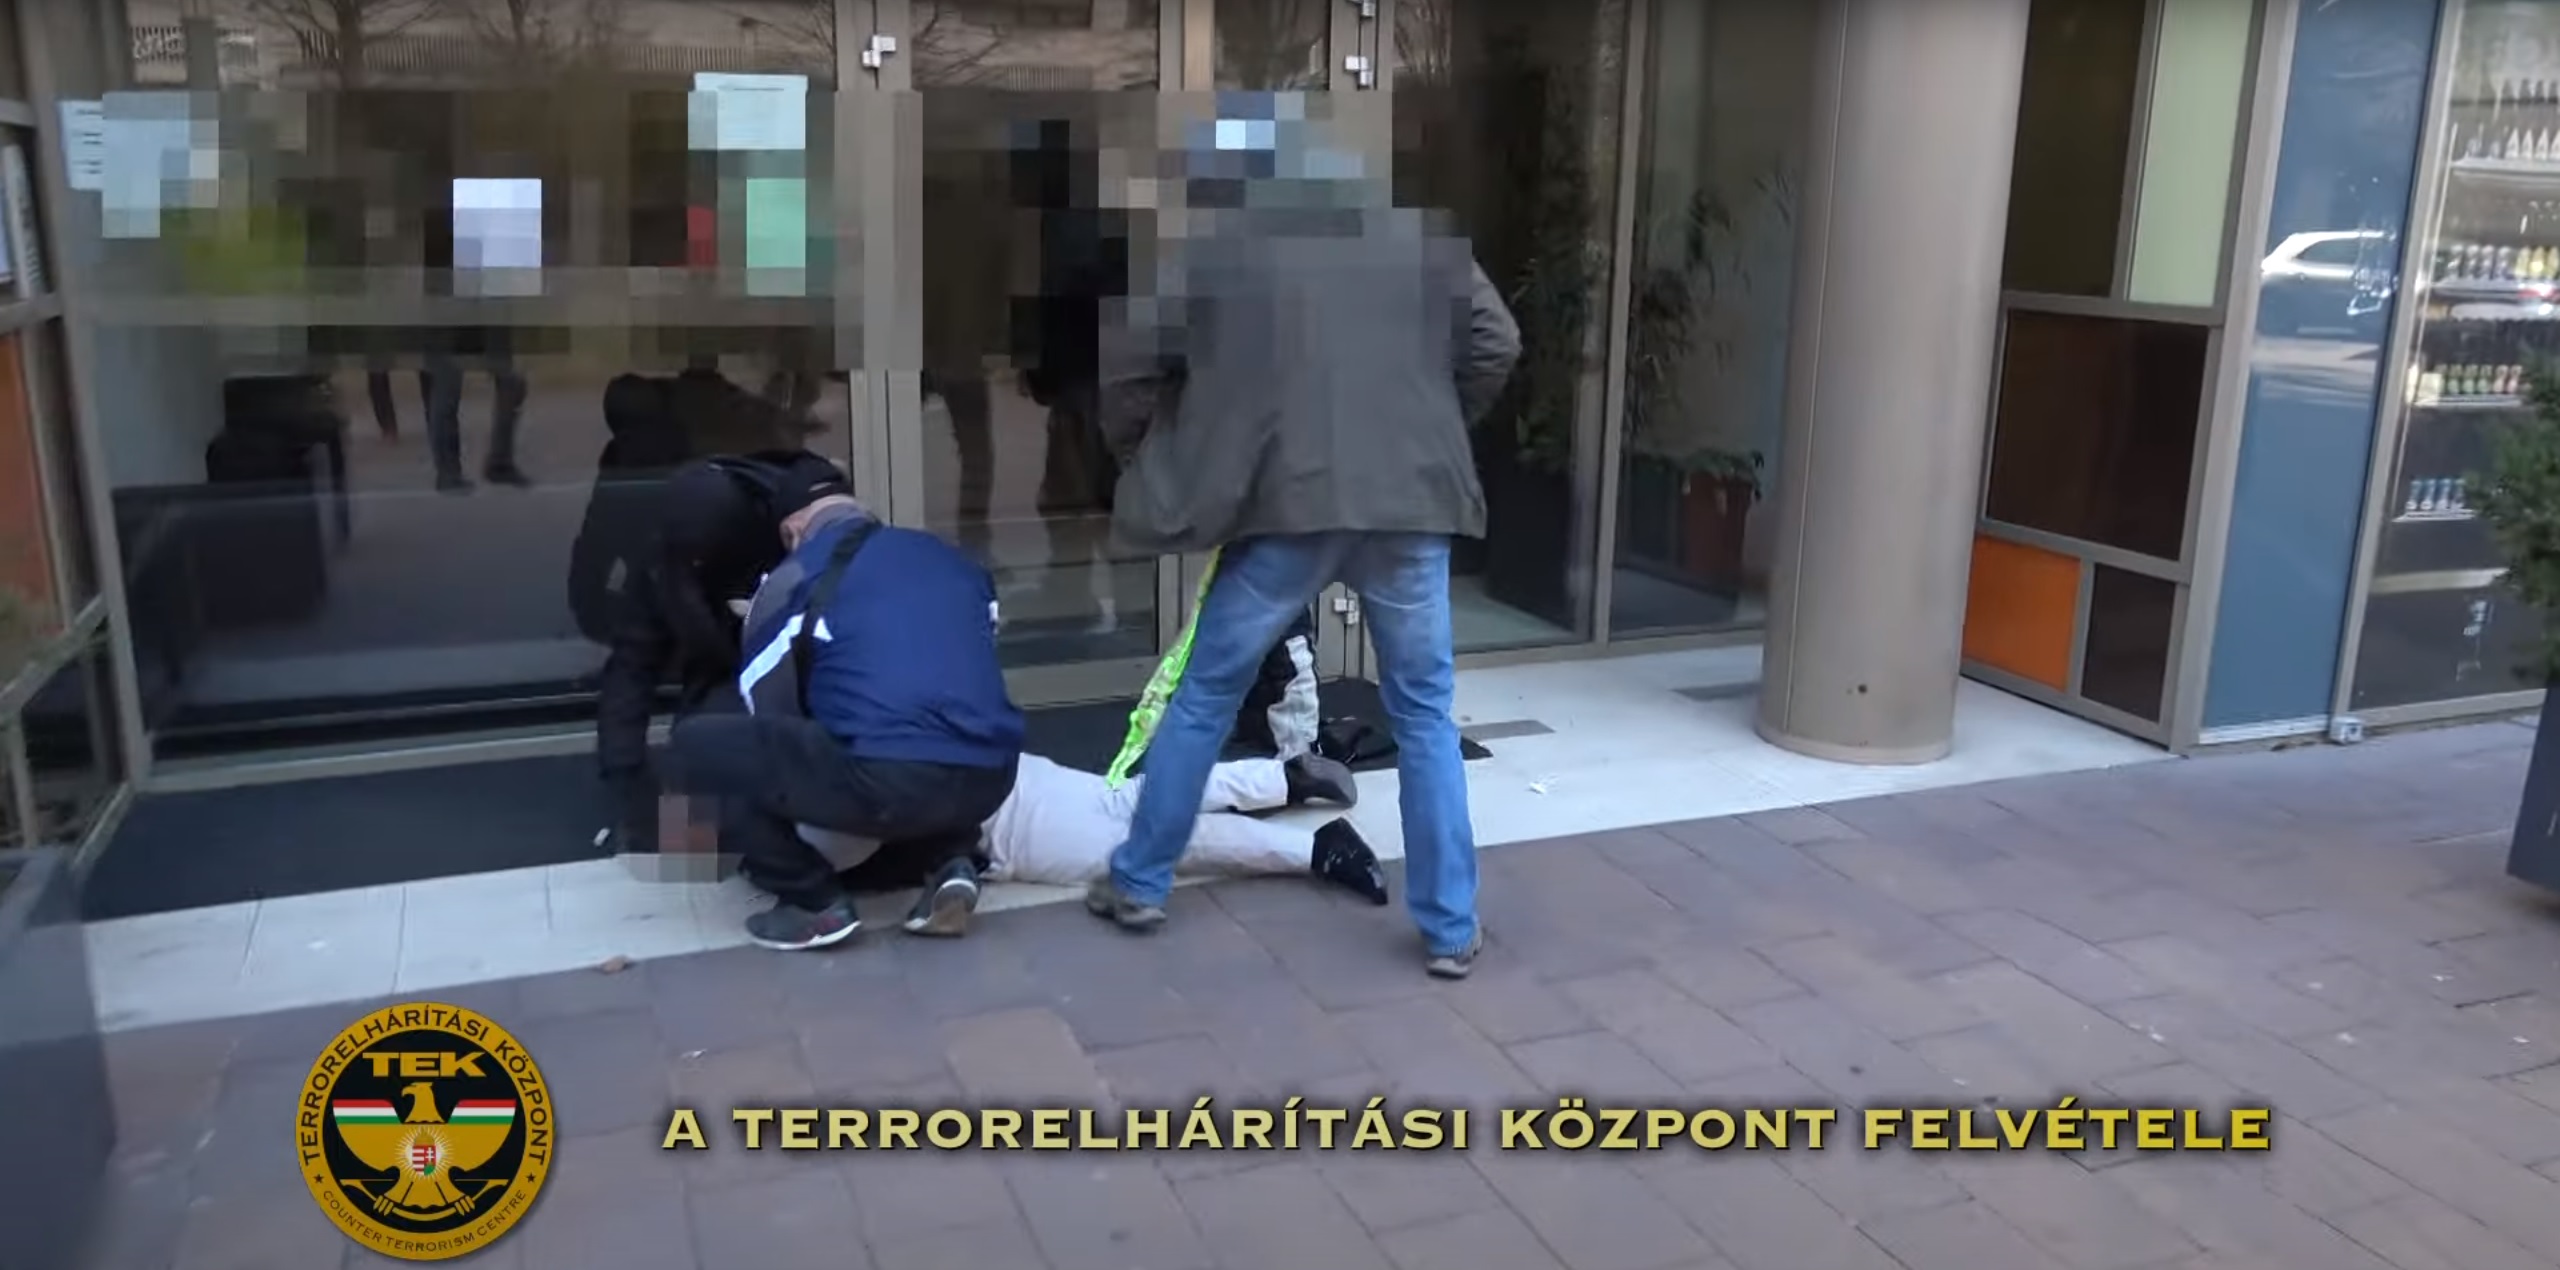 Polský muž zatčen v Budapešti za únos, braní rukojmí a ozbrojenou loupež